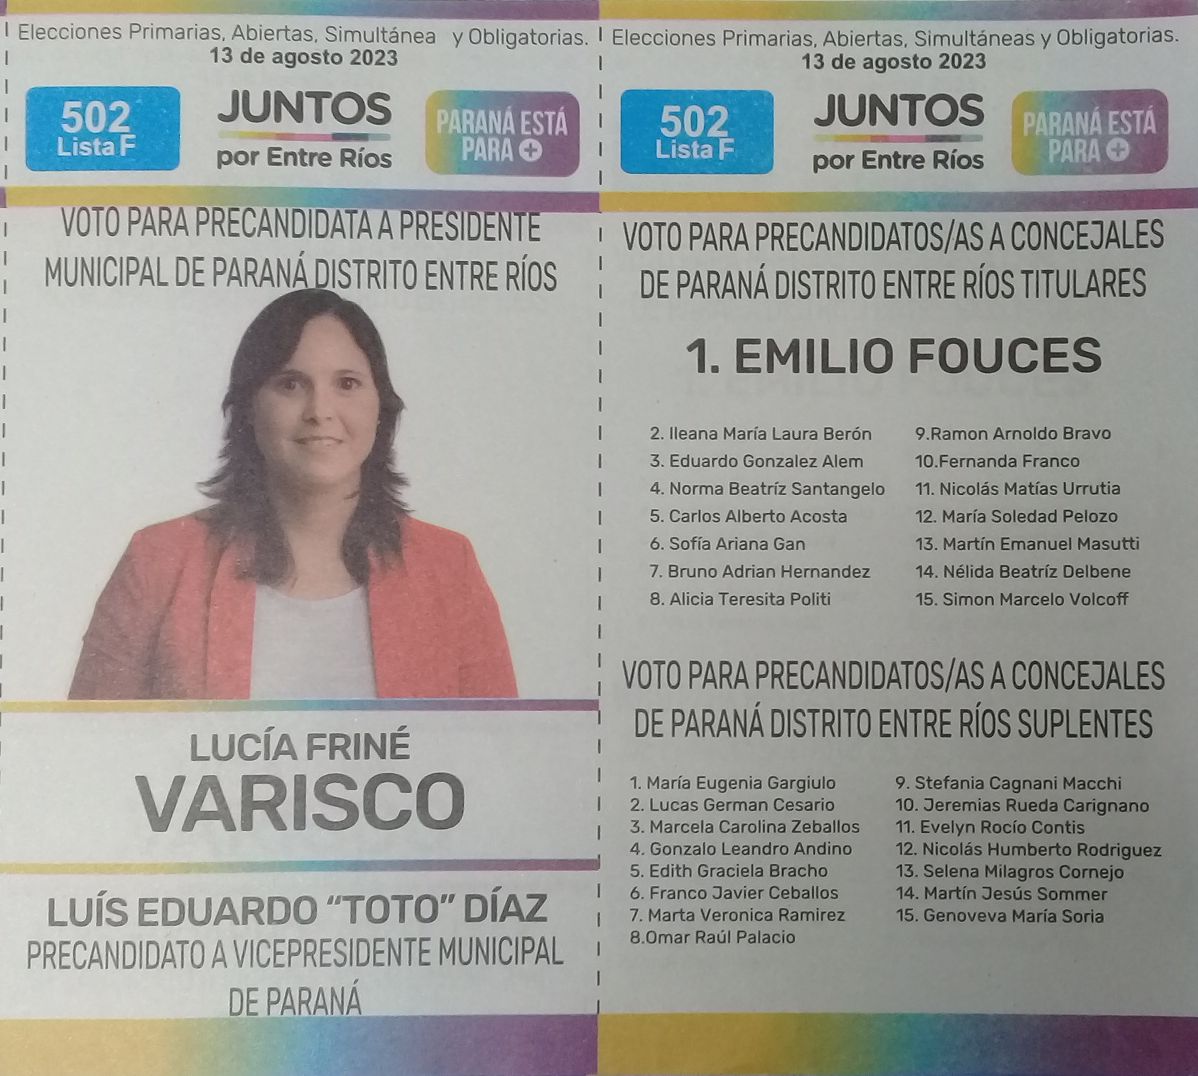 Lista 502F: Juntos por Entre Ríos - Lucía Friné Varisco.